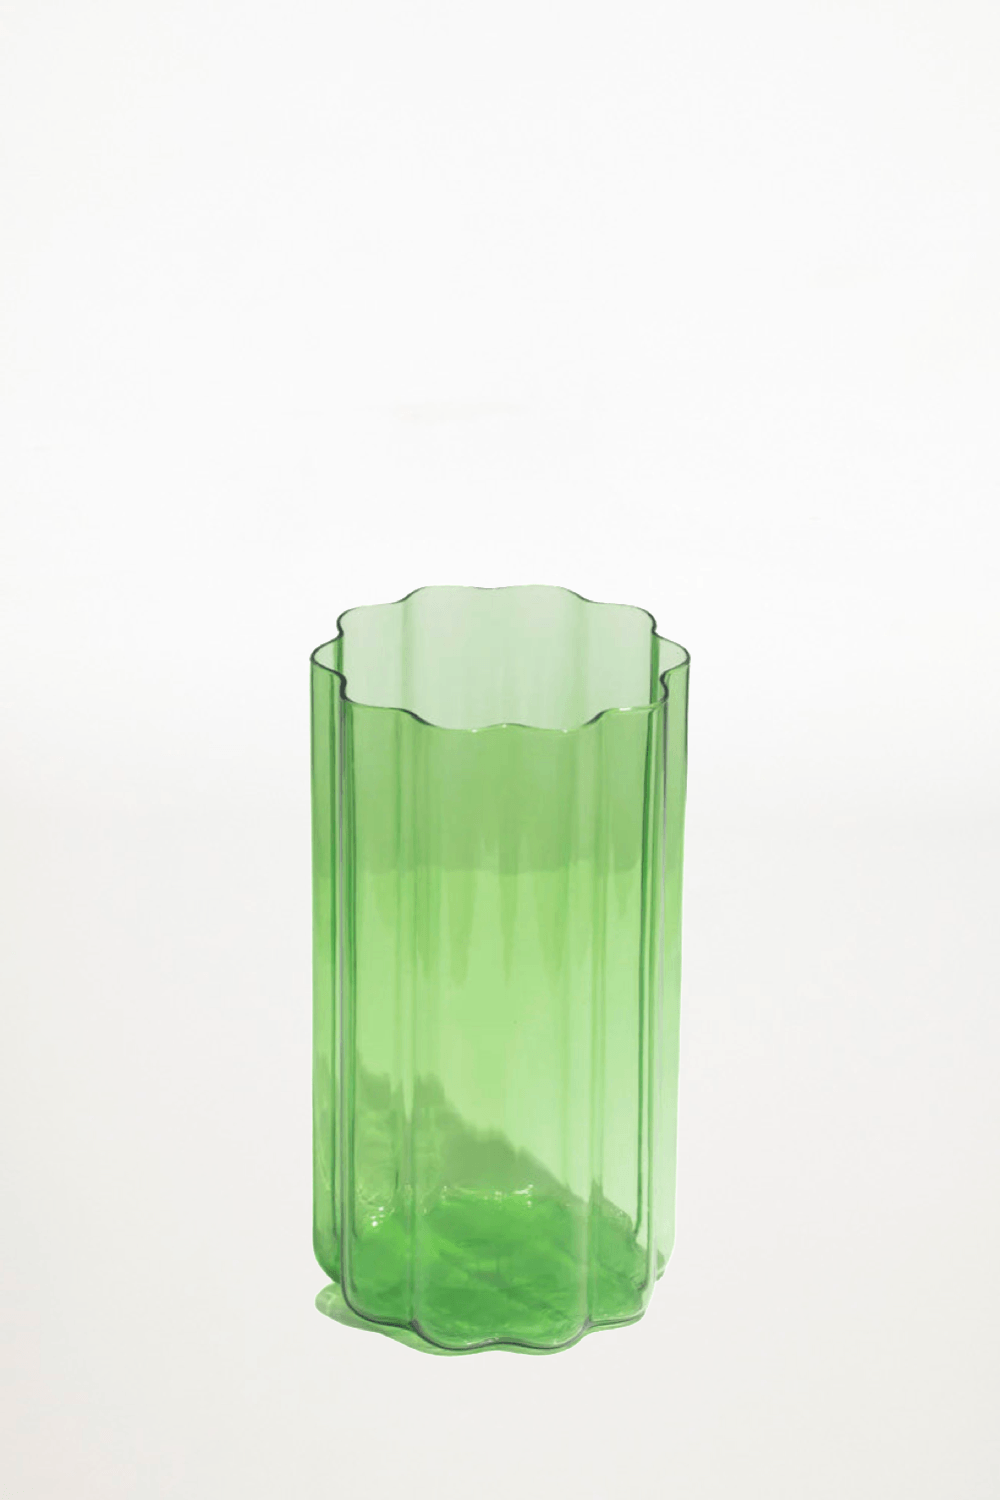 Fazeek - Wave Vase - Green - Ensemble Studios